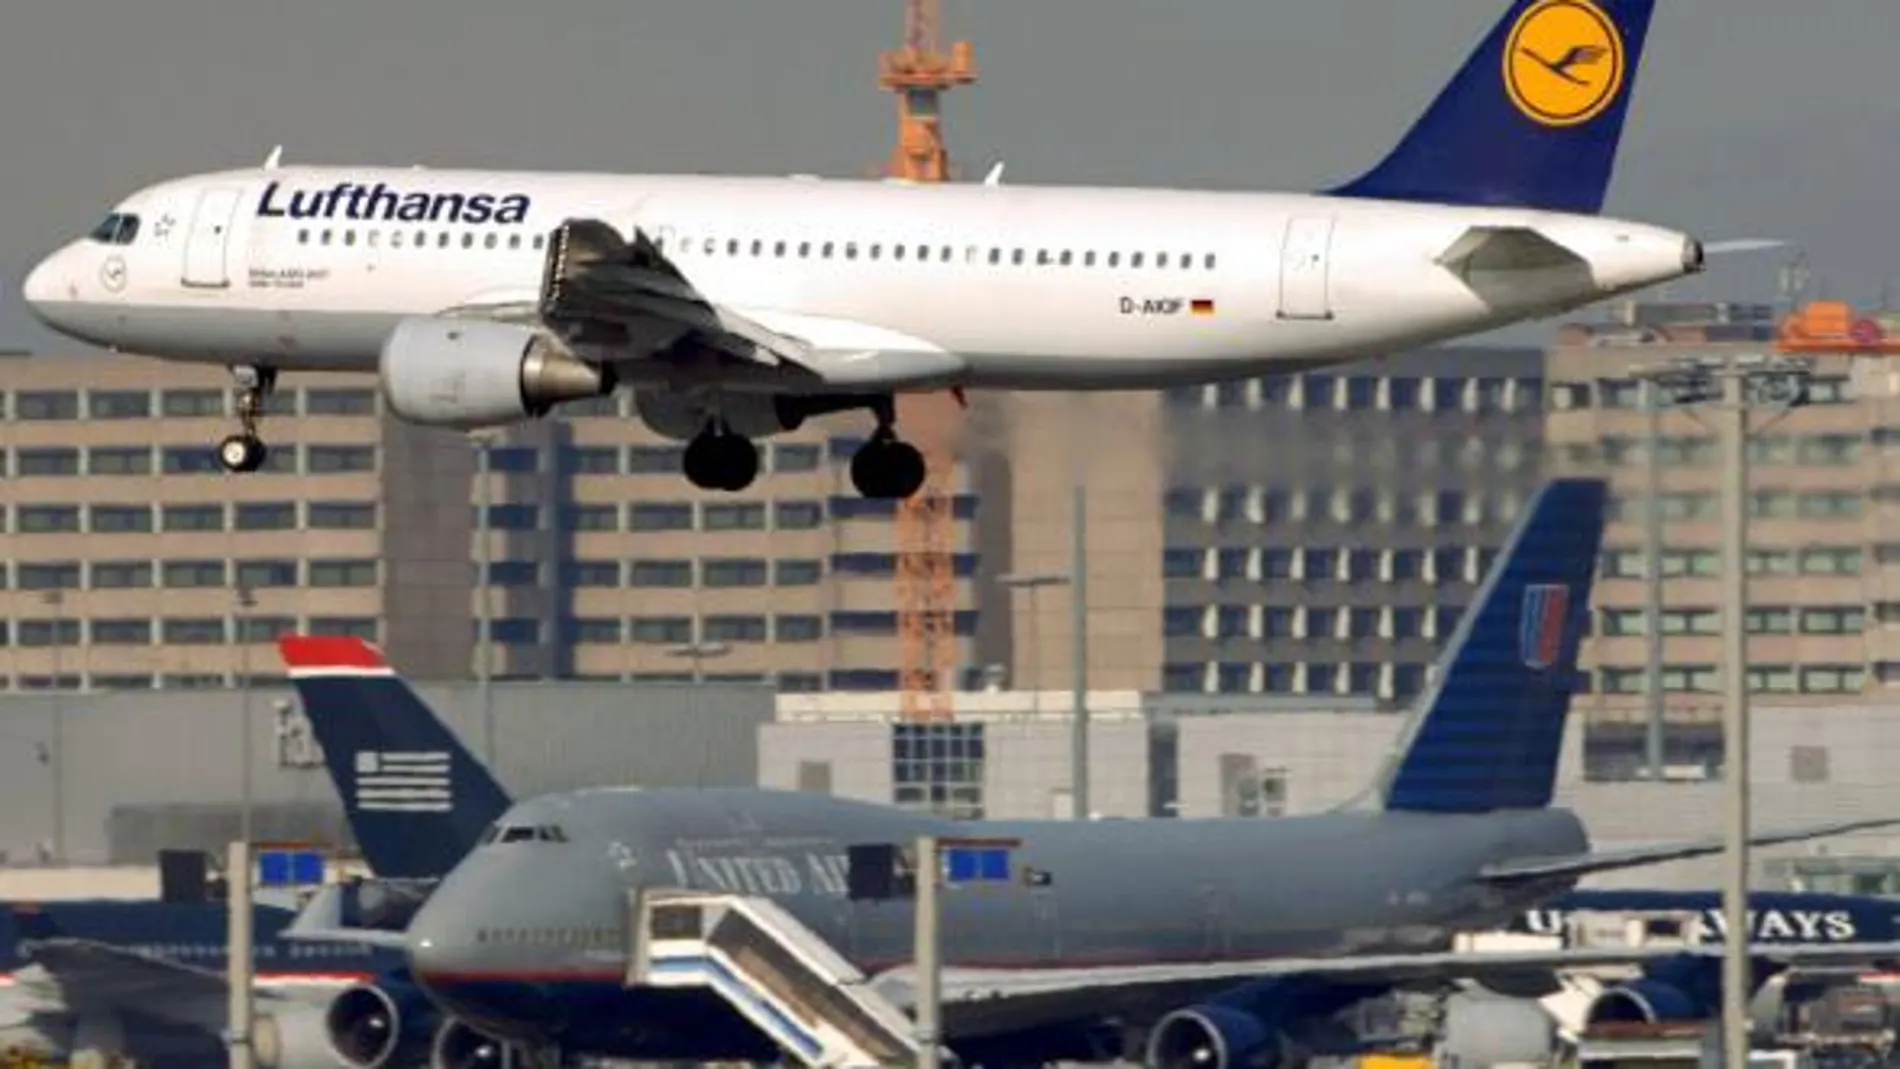 Catorce heridos por turbulencias en un vuelo de Múnich a Lisboa